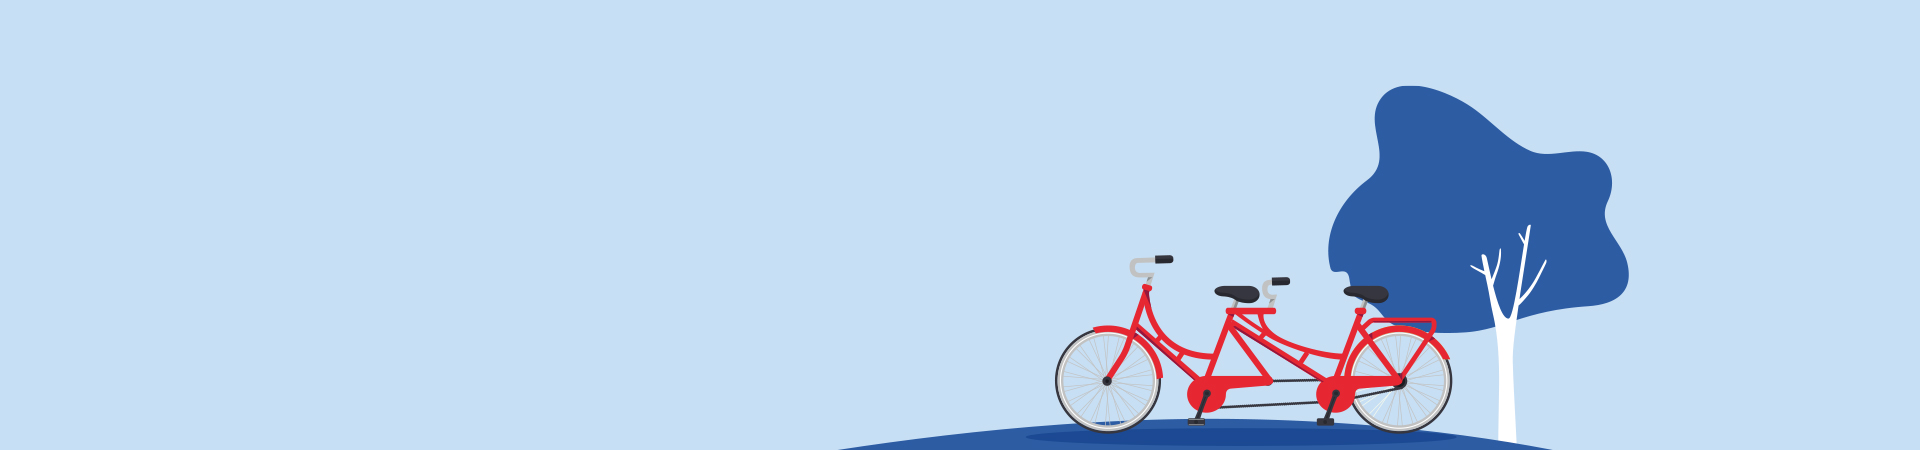 Rappresentazione grafica bicicletta